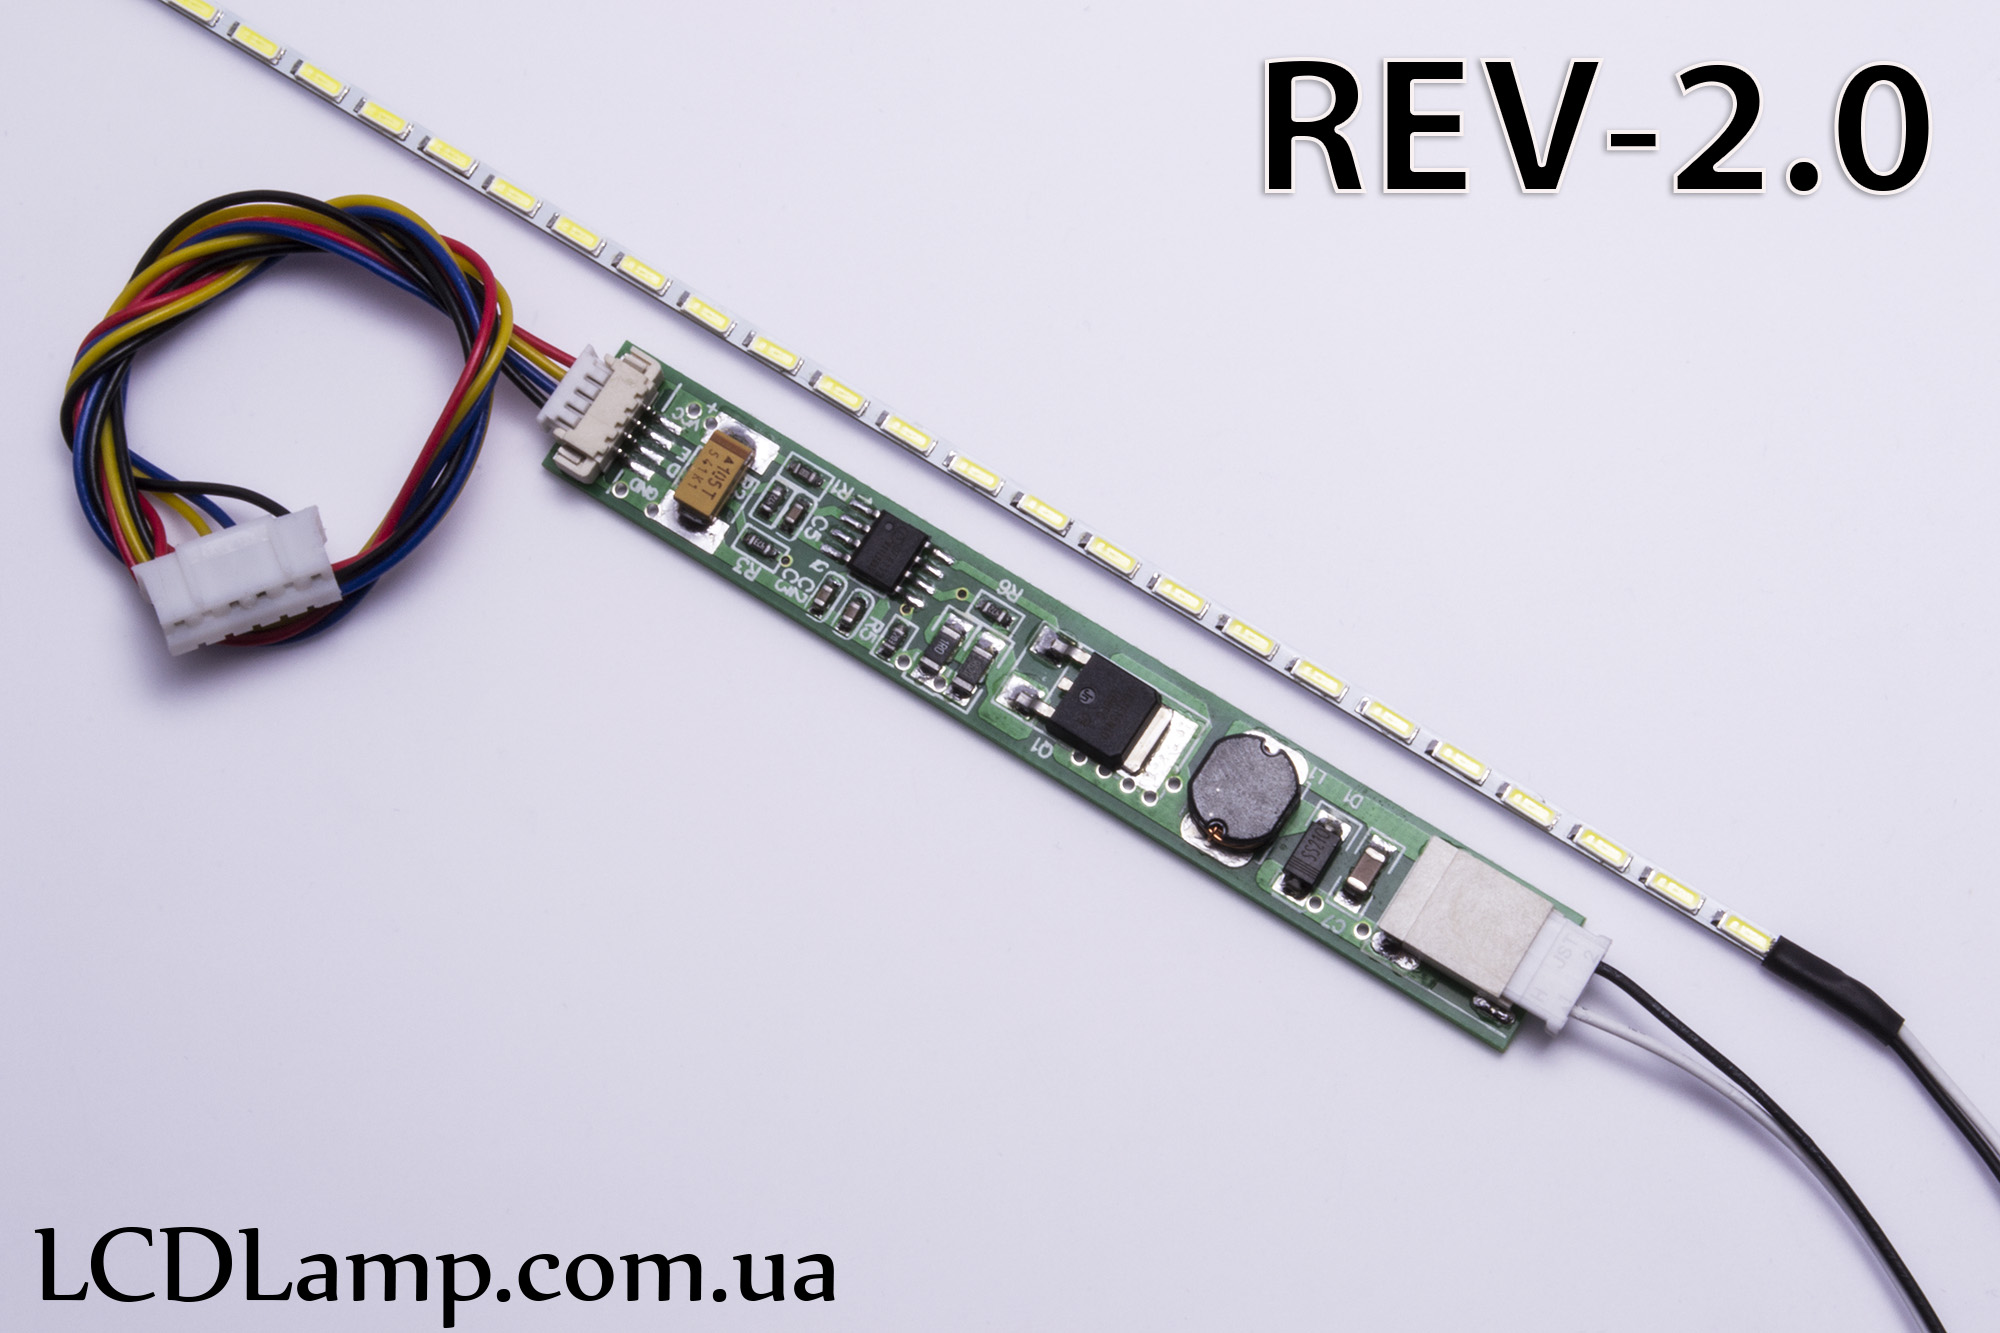 LED набор для ноутбука Rev-2.0 (199мм.)